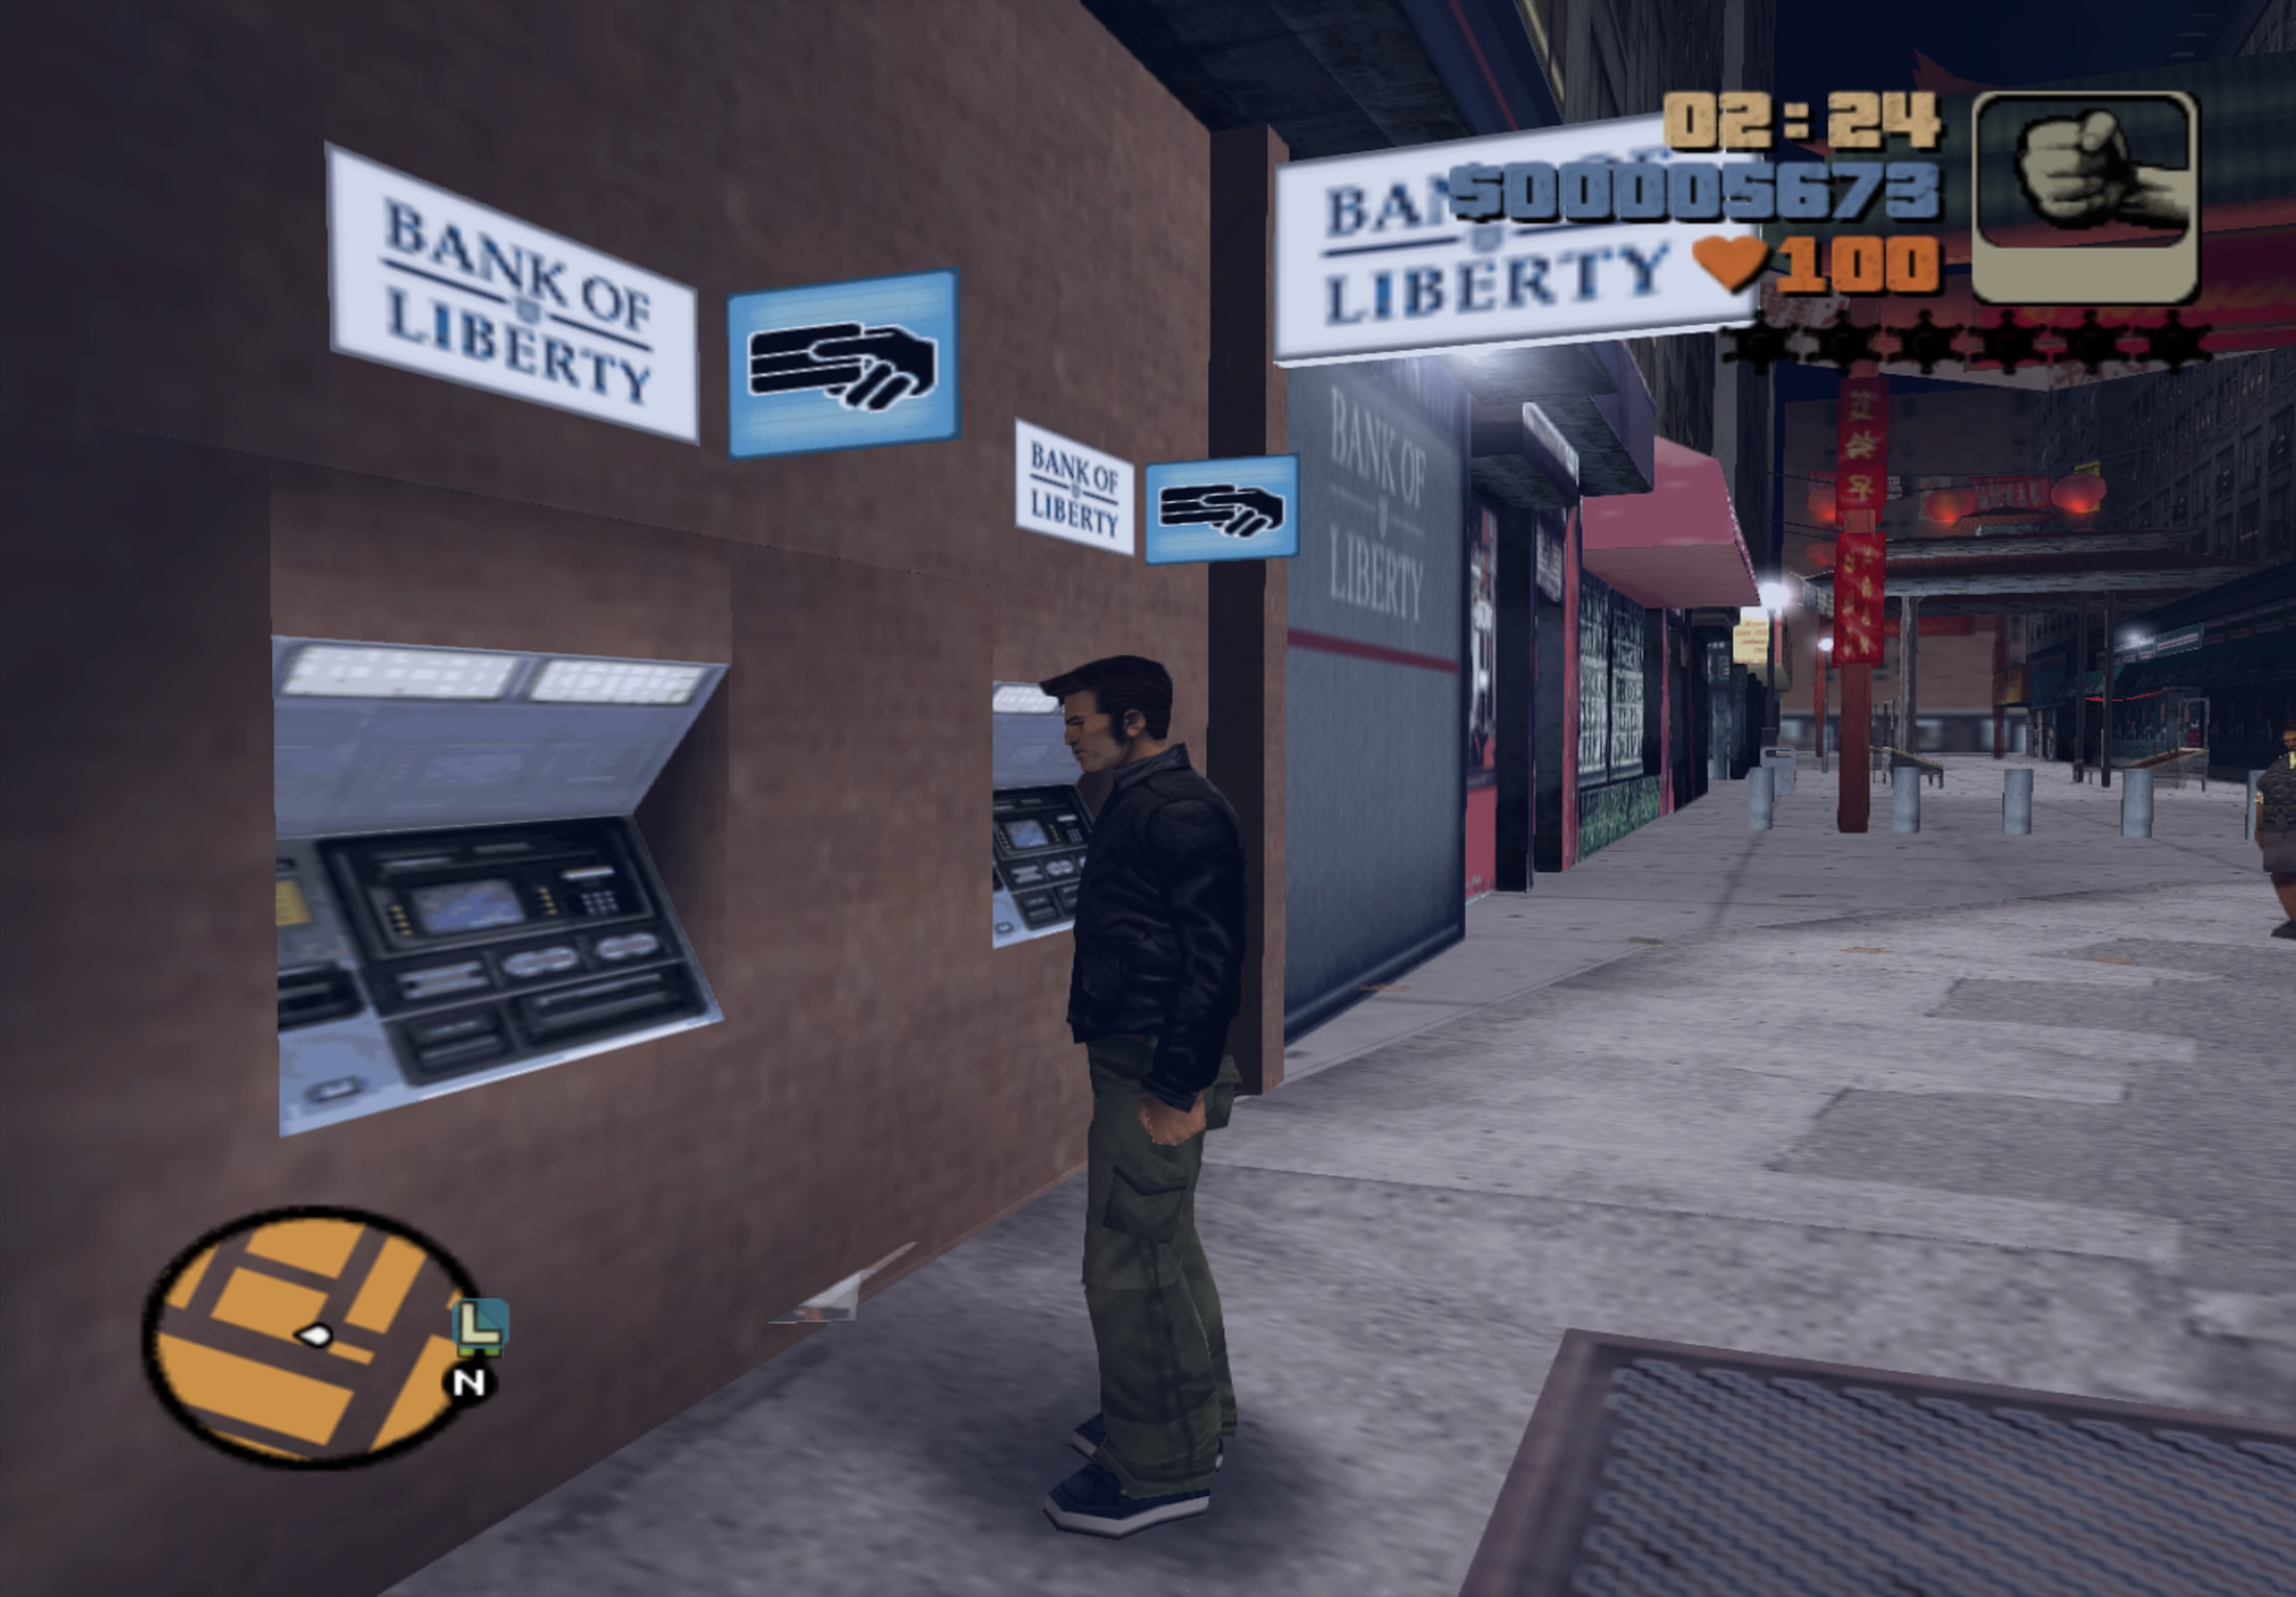 Grand Theft Auto III (PS2) / Grand Theft Auto III: Definitive